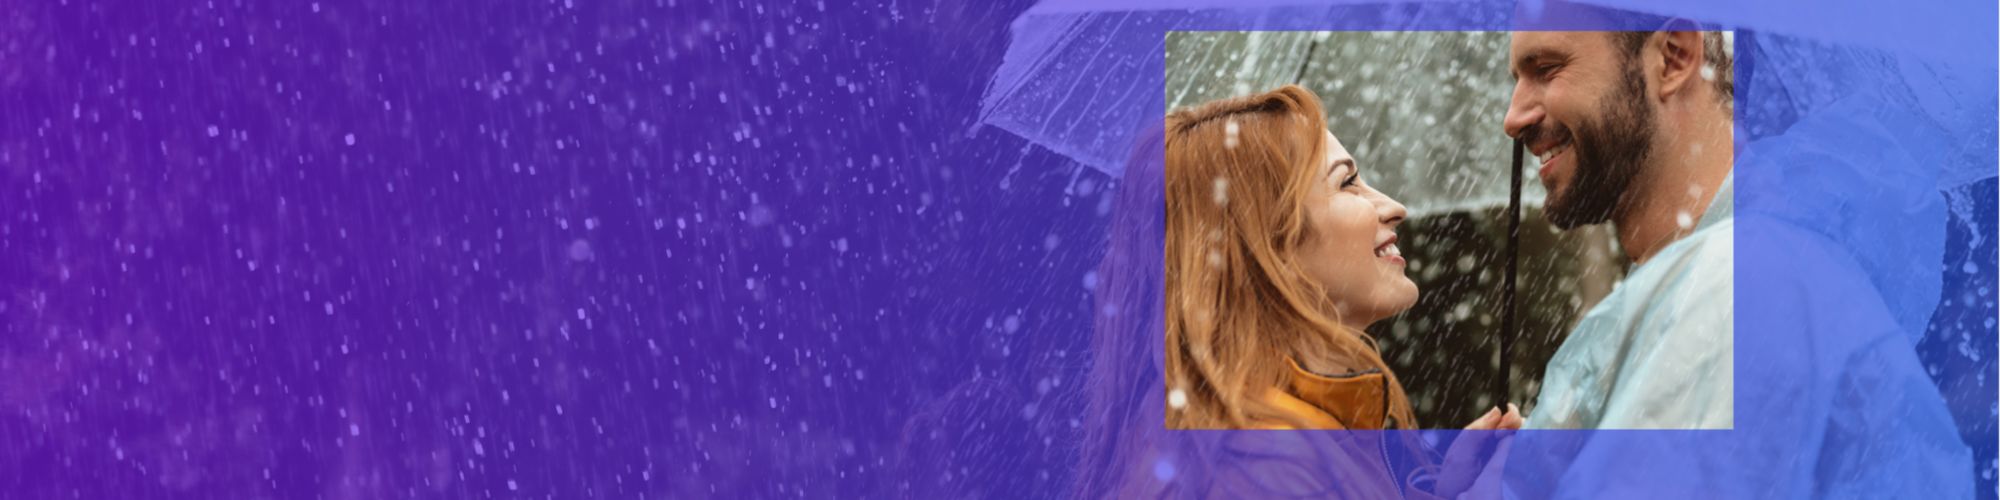 man woman in rain